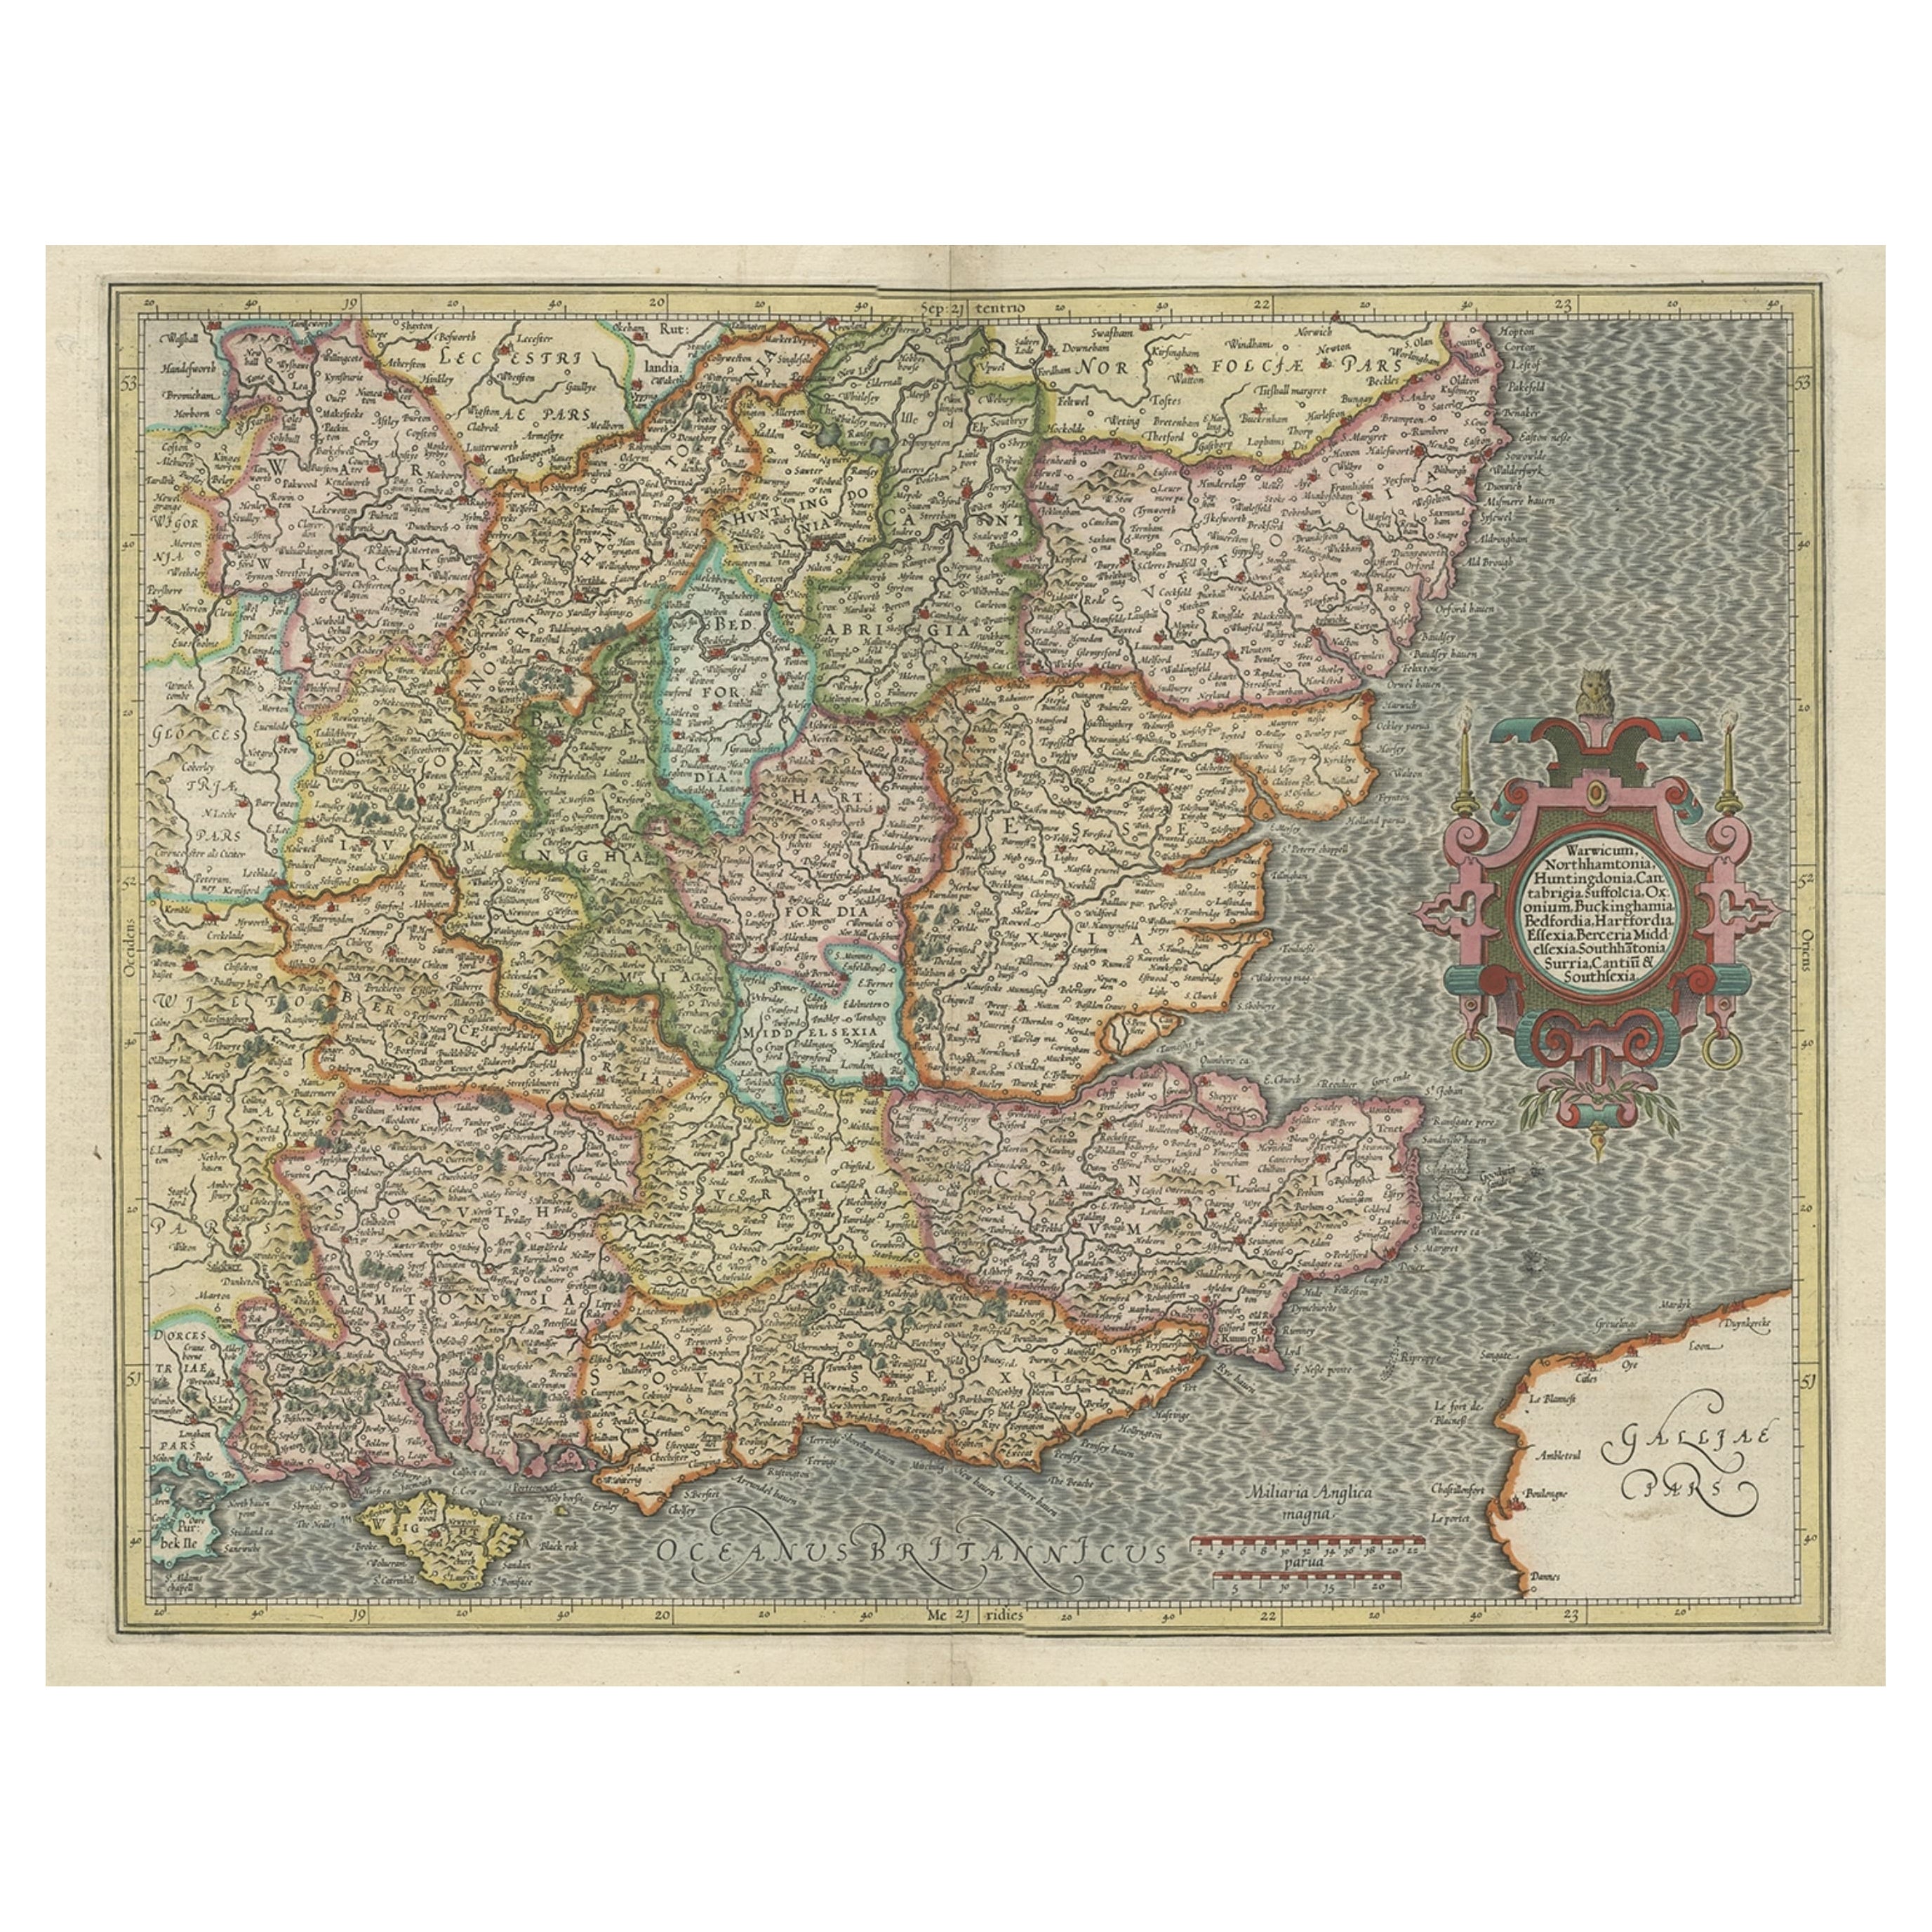 Originale alte Karte von Südost-England einschließlich London, Oxford, Cambridge usw., 1633